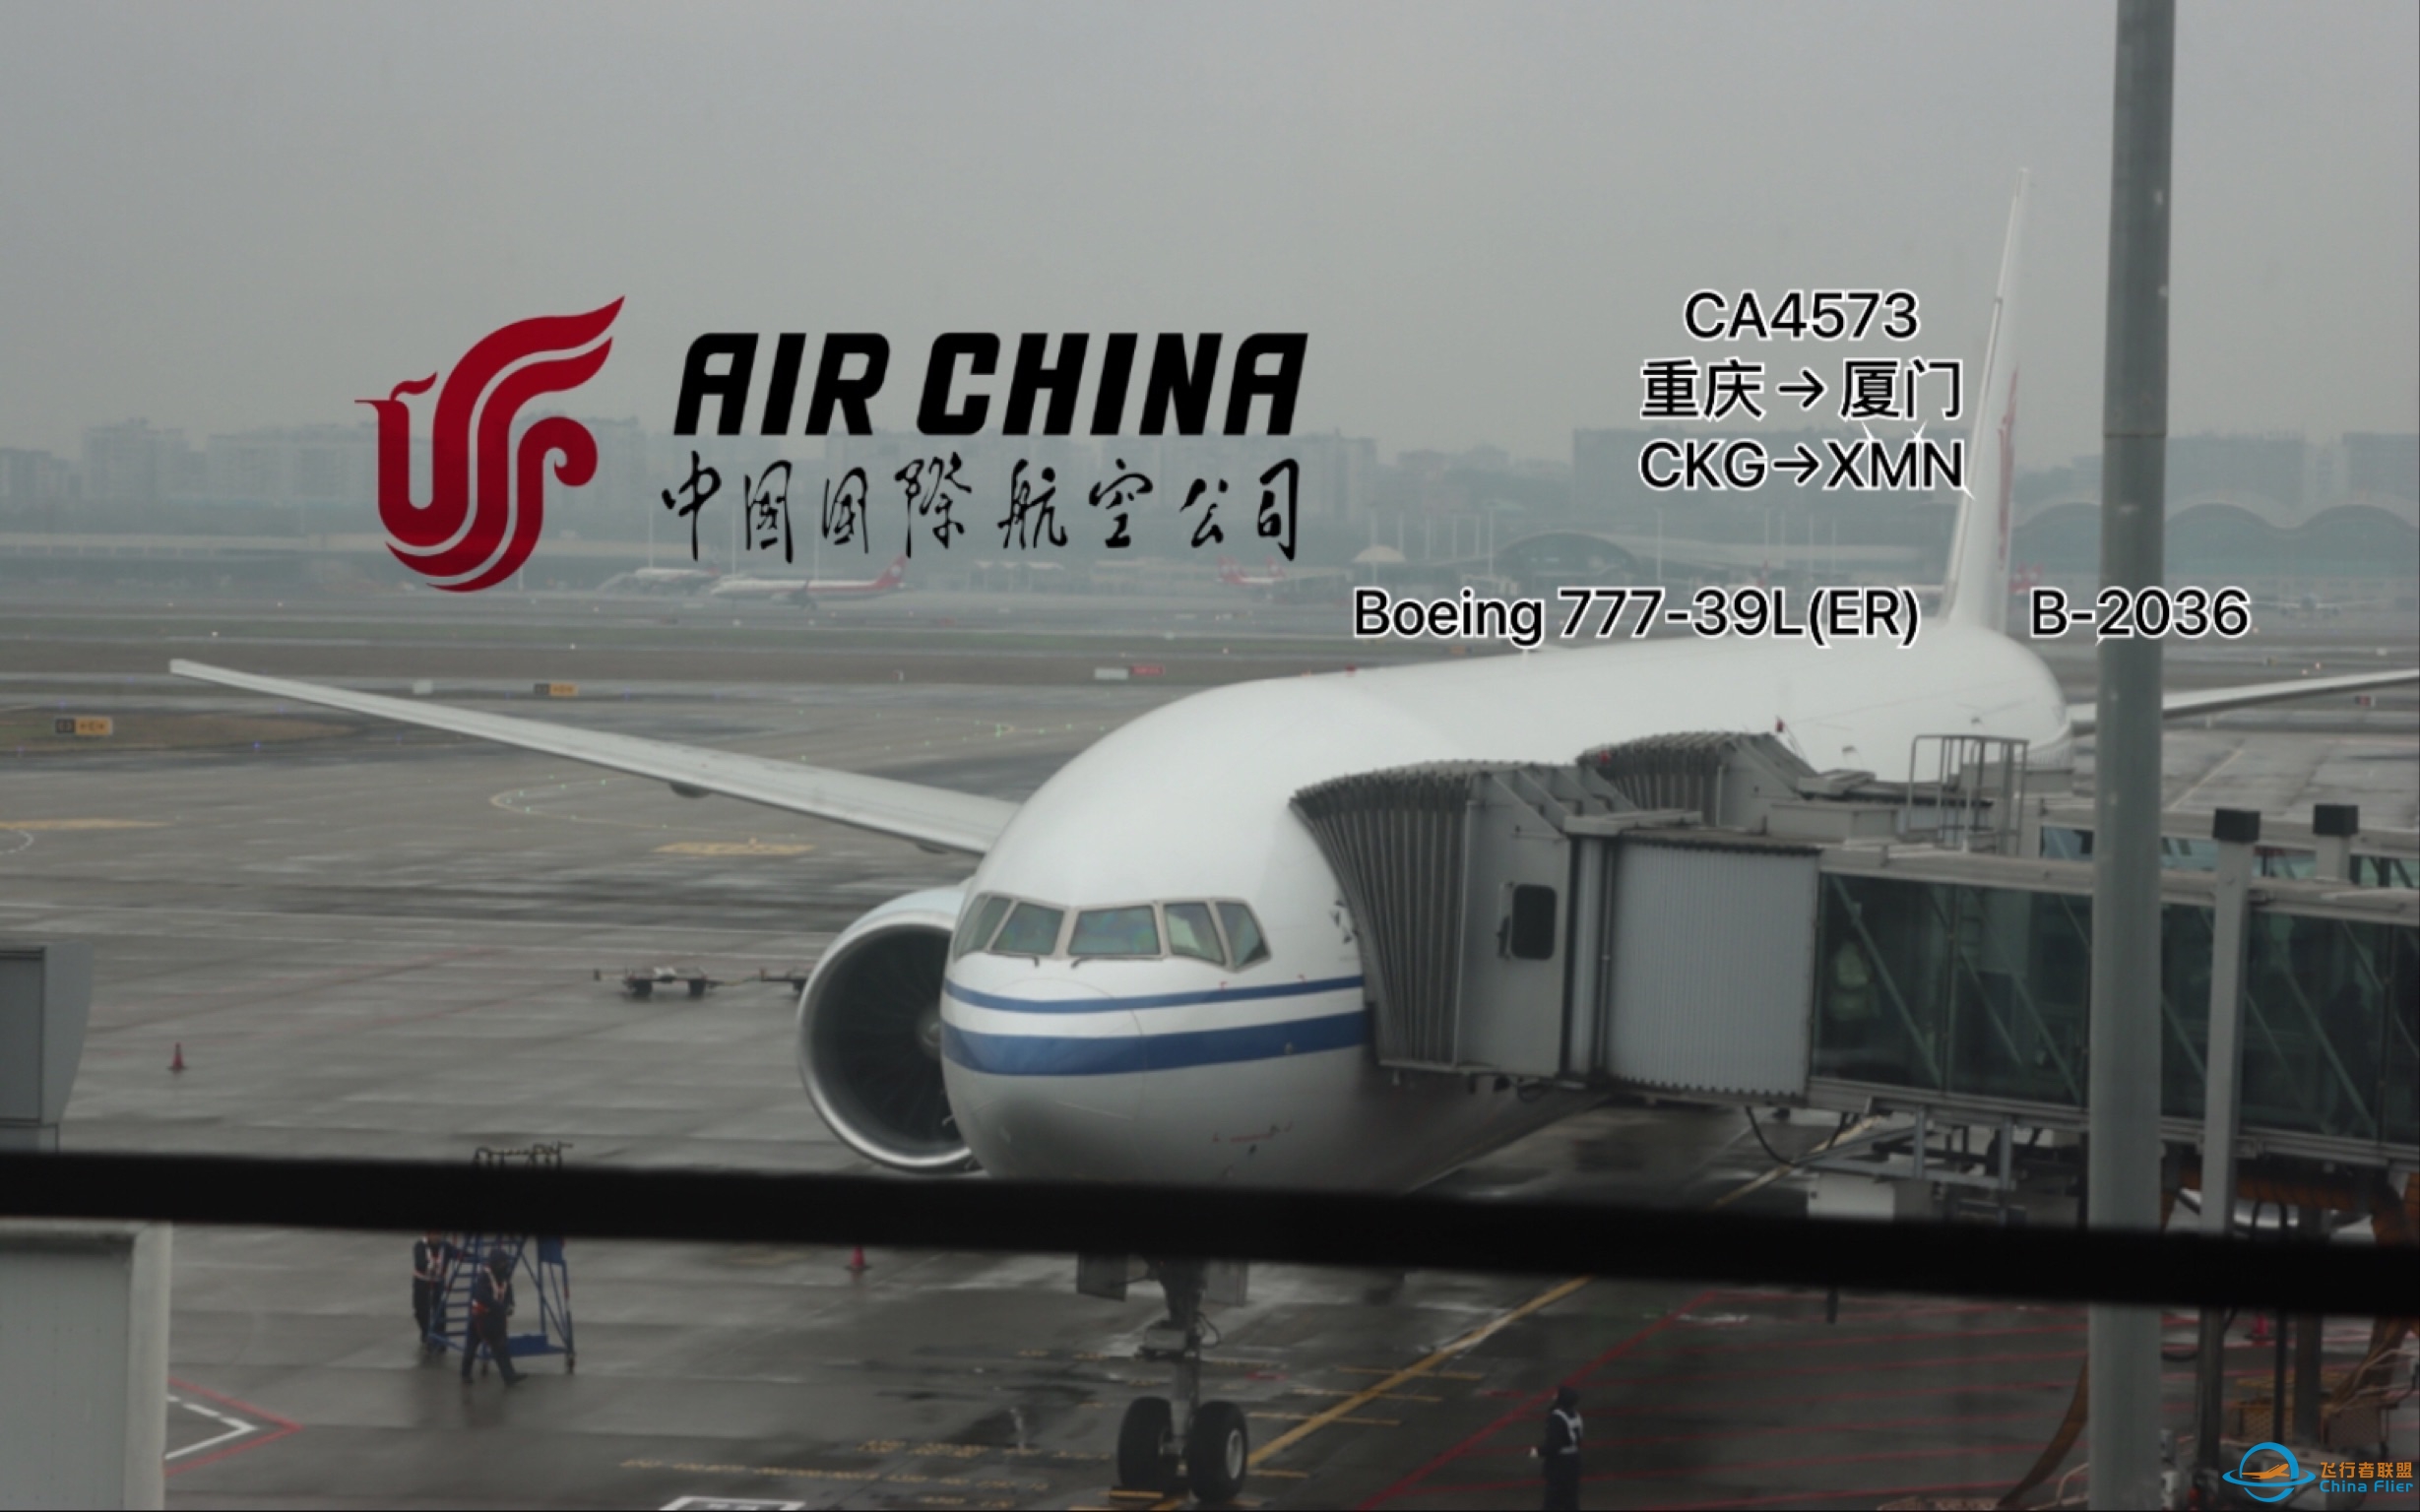 【飞行Vlog】国航CA4573航班 | Boeing 777-300ER | 重庆-厦门 | 经济舱 飞行体验-2226 